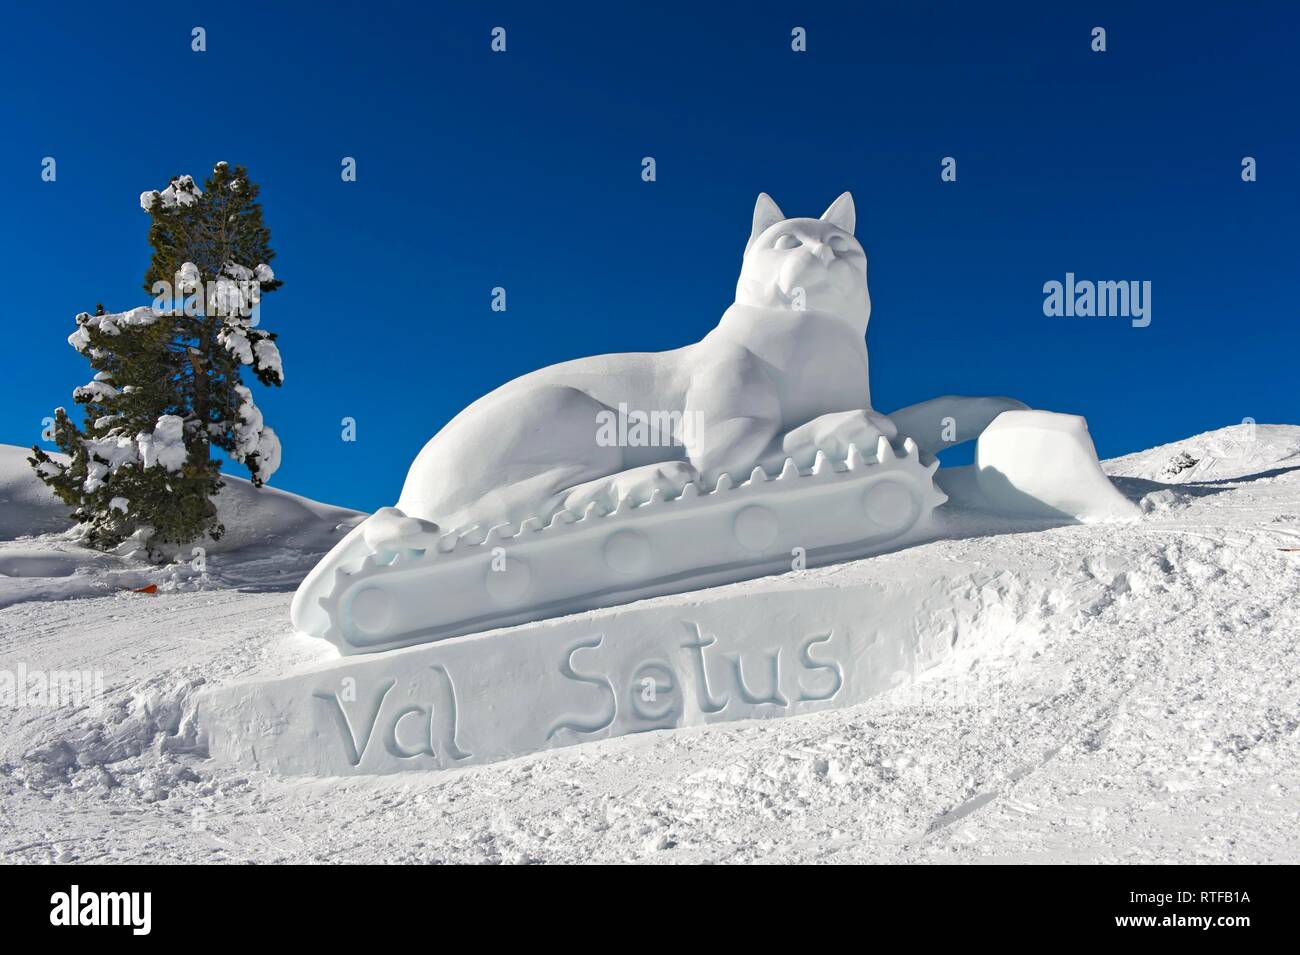 Esculturas de Hielo cat figura, snow cat, Val Setus, Corvara, Badia, Tirol del Sur, Italia Foto de stock